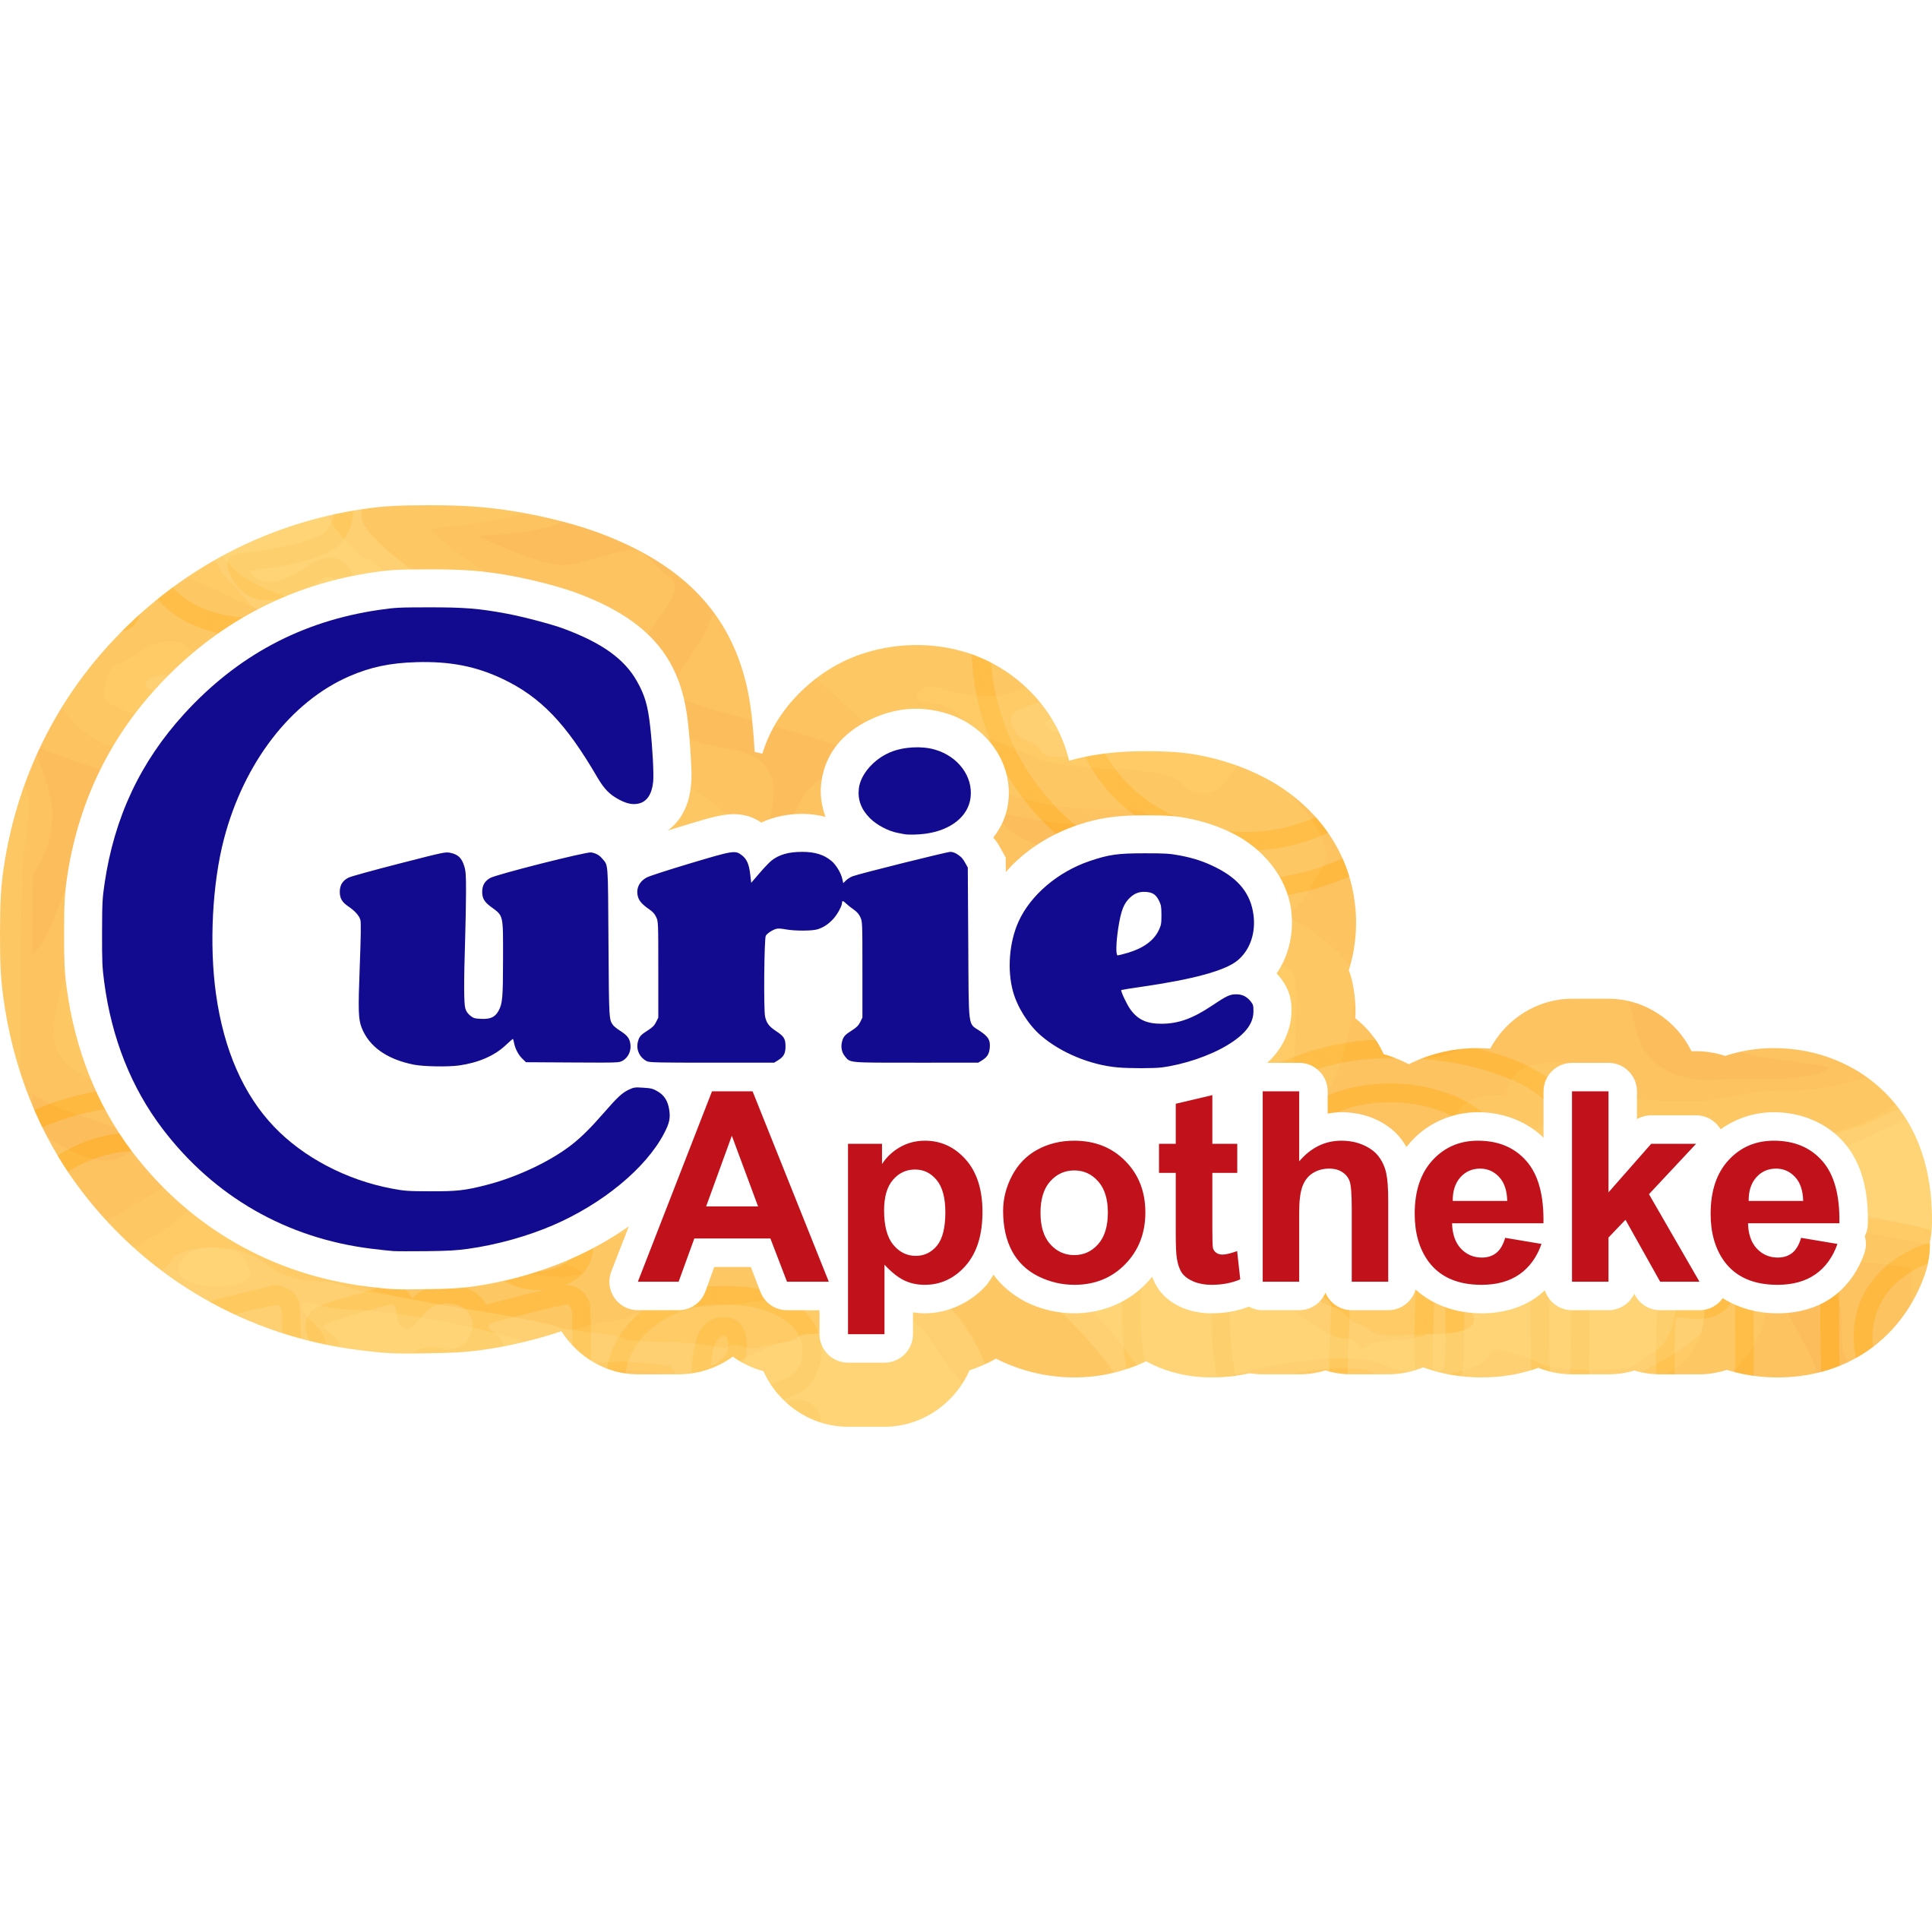 Curie-Apotheke Leopoldshafen in Eggenstein Leopoldshafen - Logo